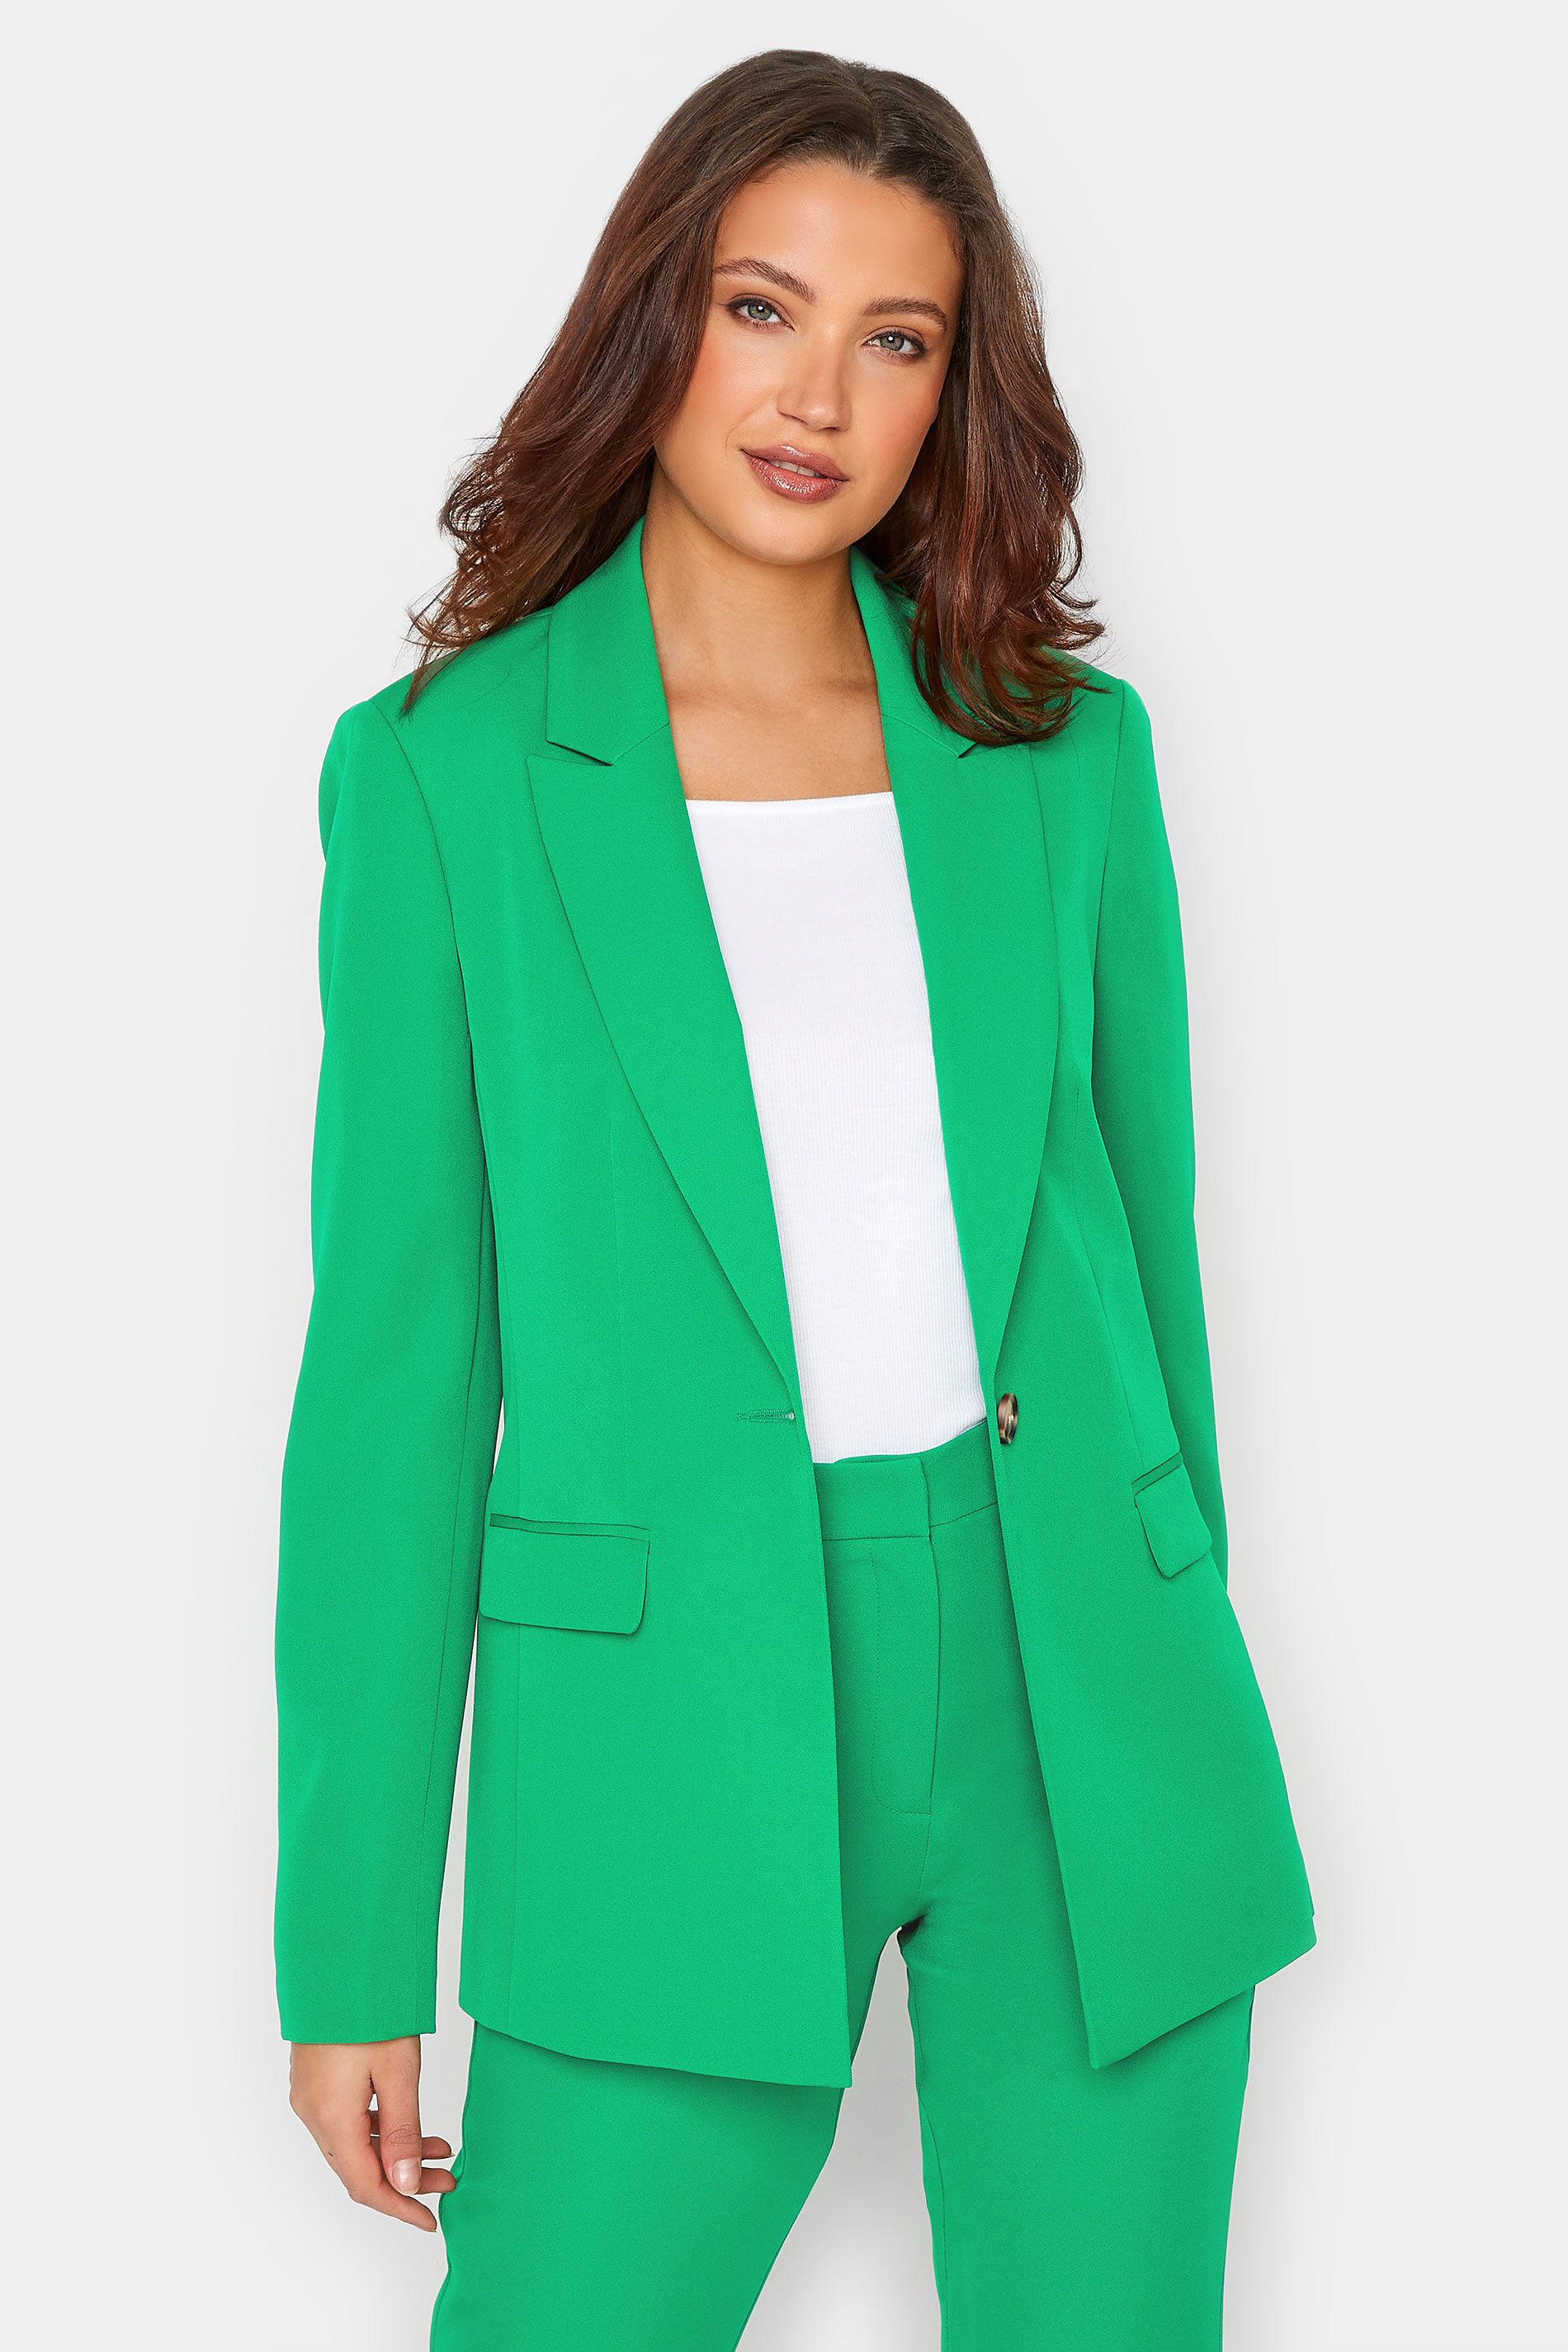 LTS Tall Green Tailored Blazer | Long Tall Sally